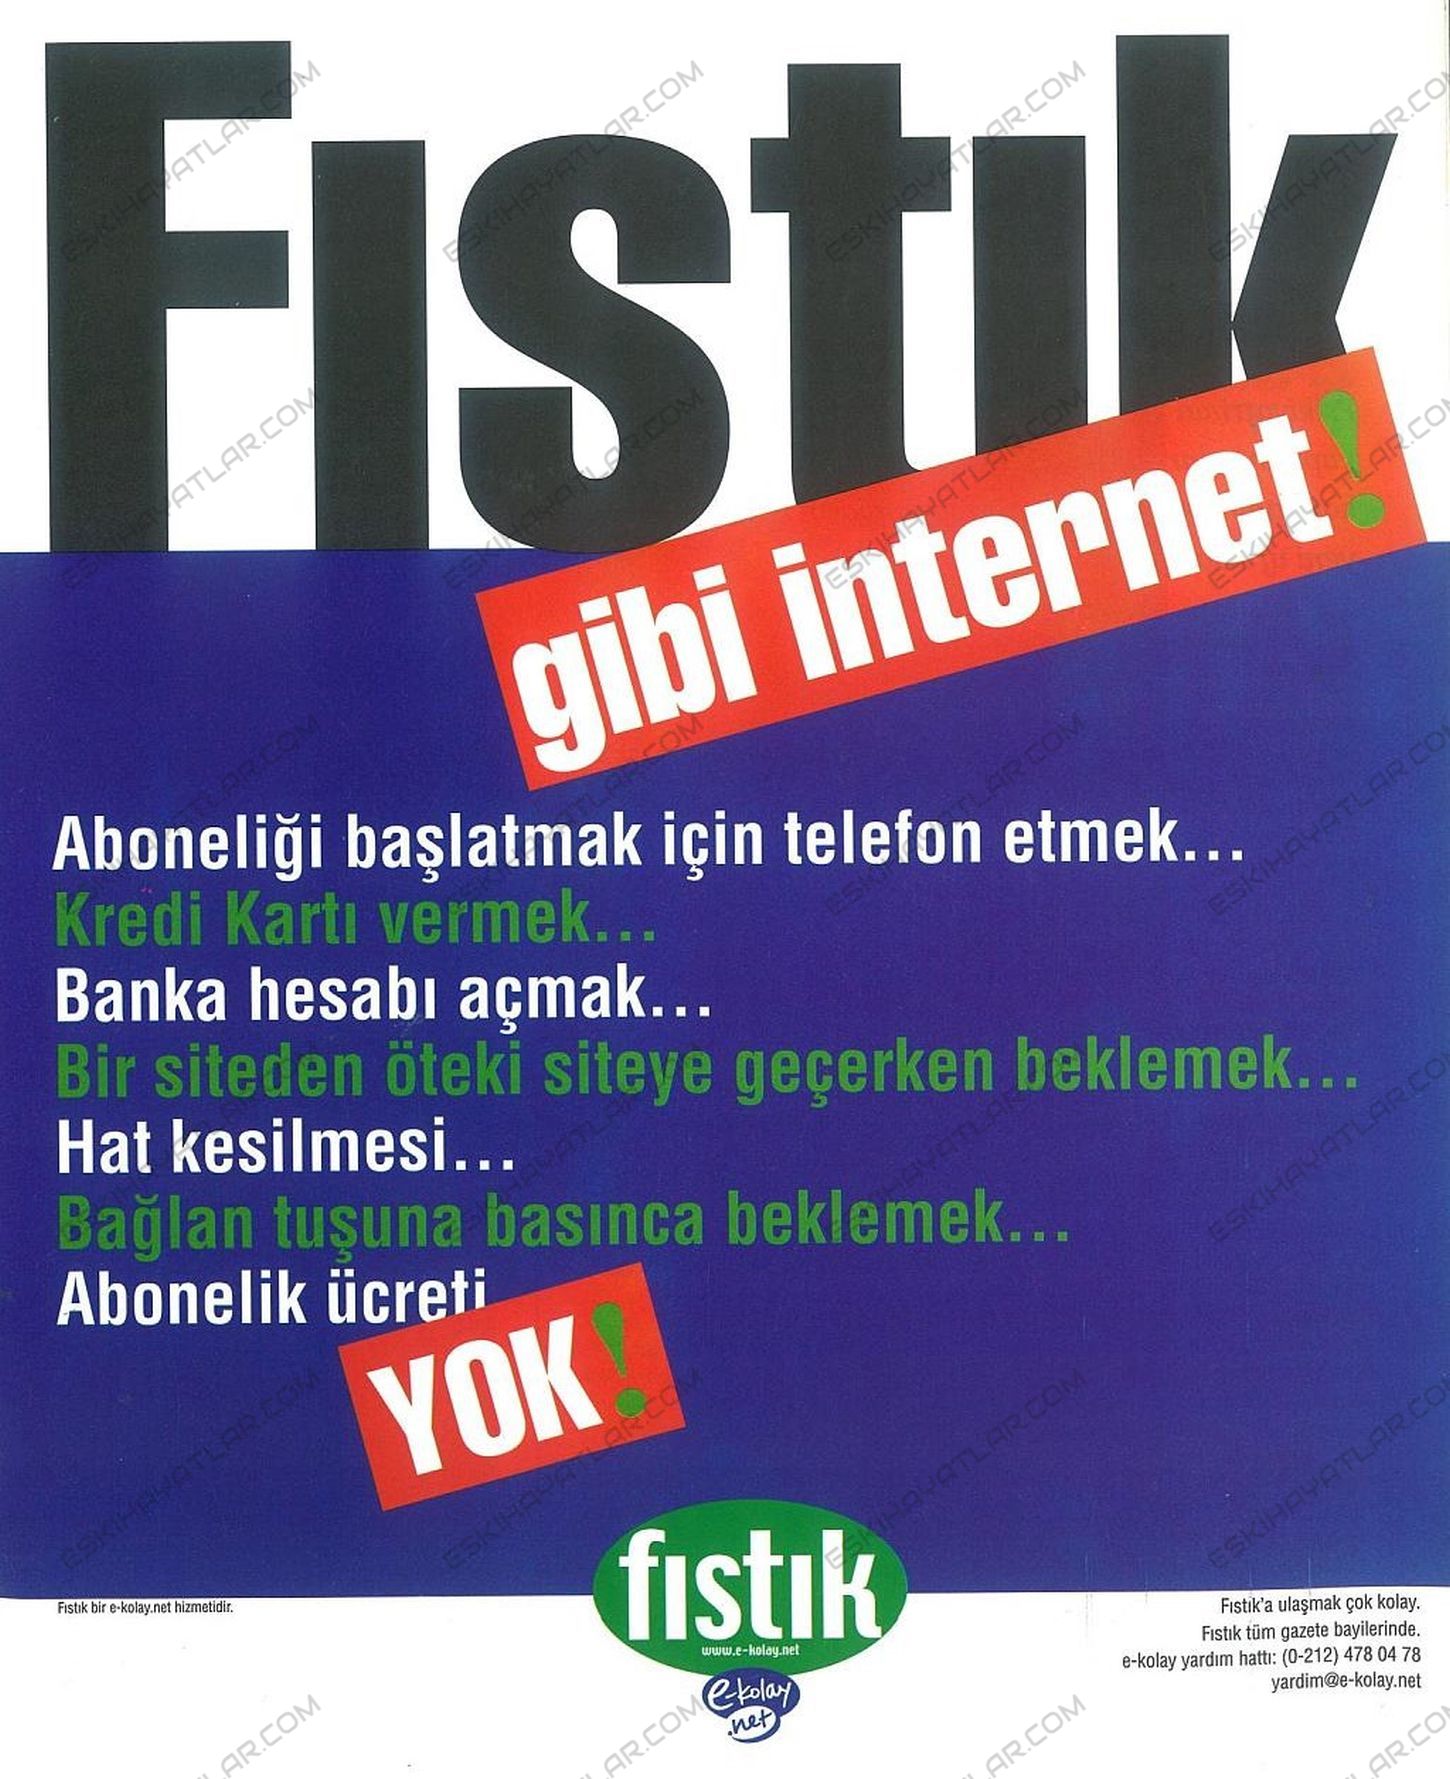 internet-ulkemize-ne-zaman-geldi-turkiyede-internet-25-yasinda (55)